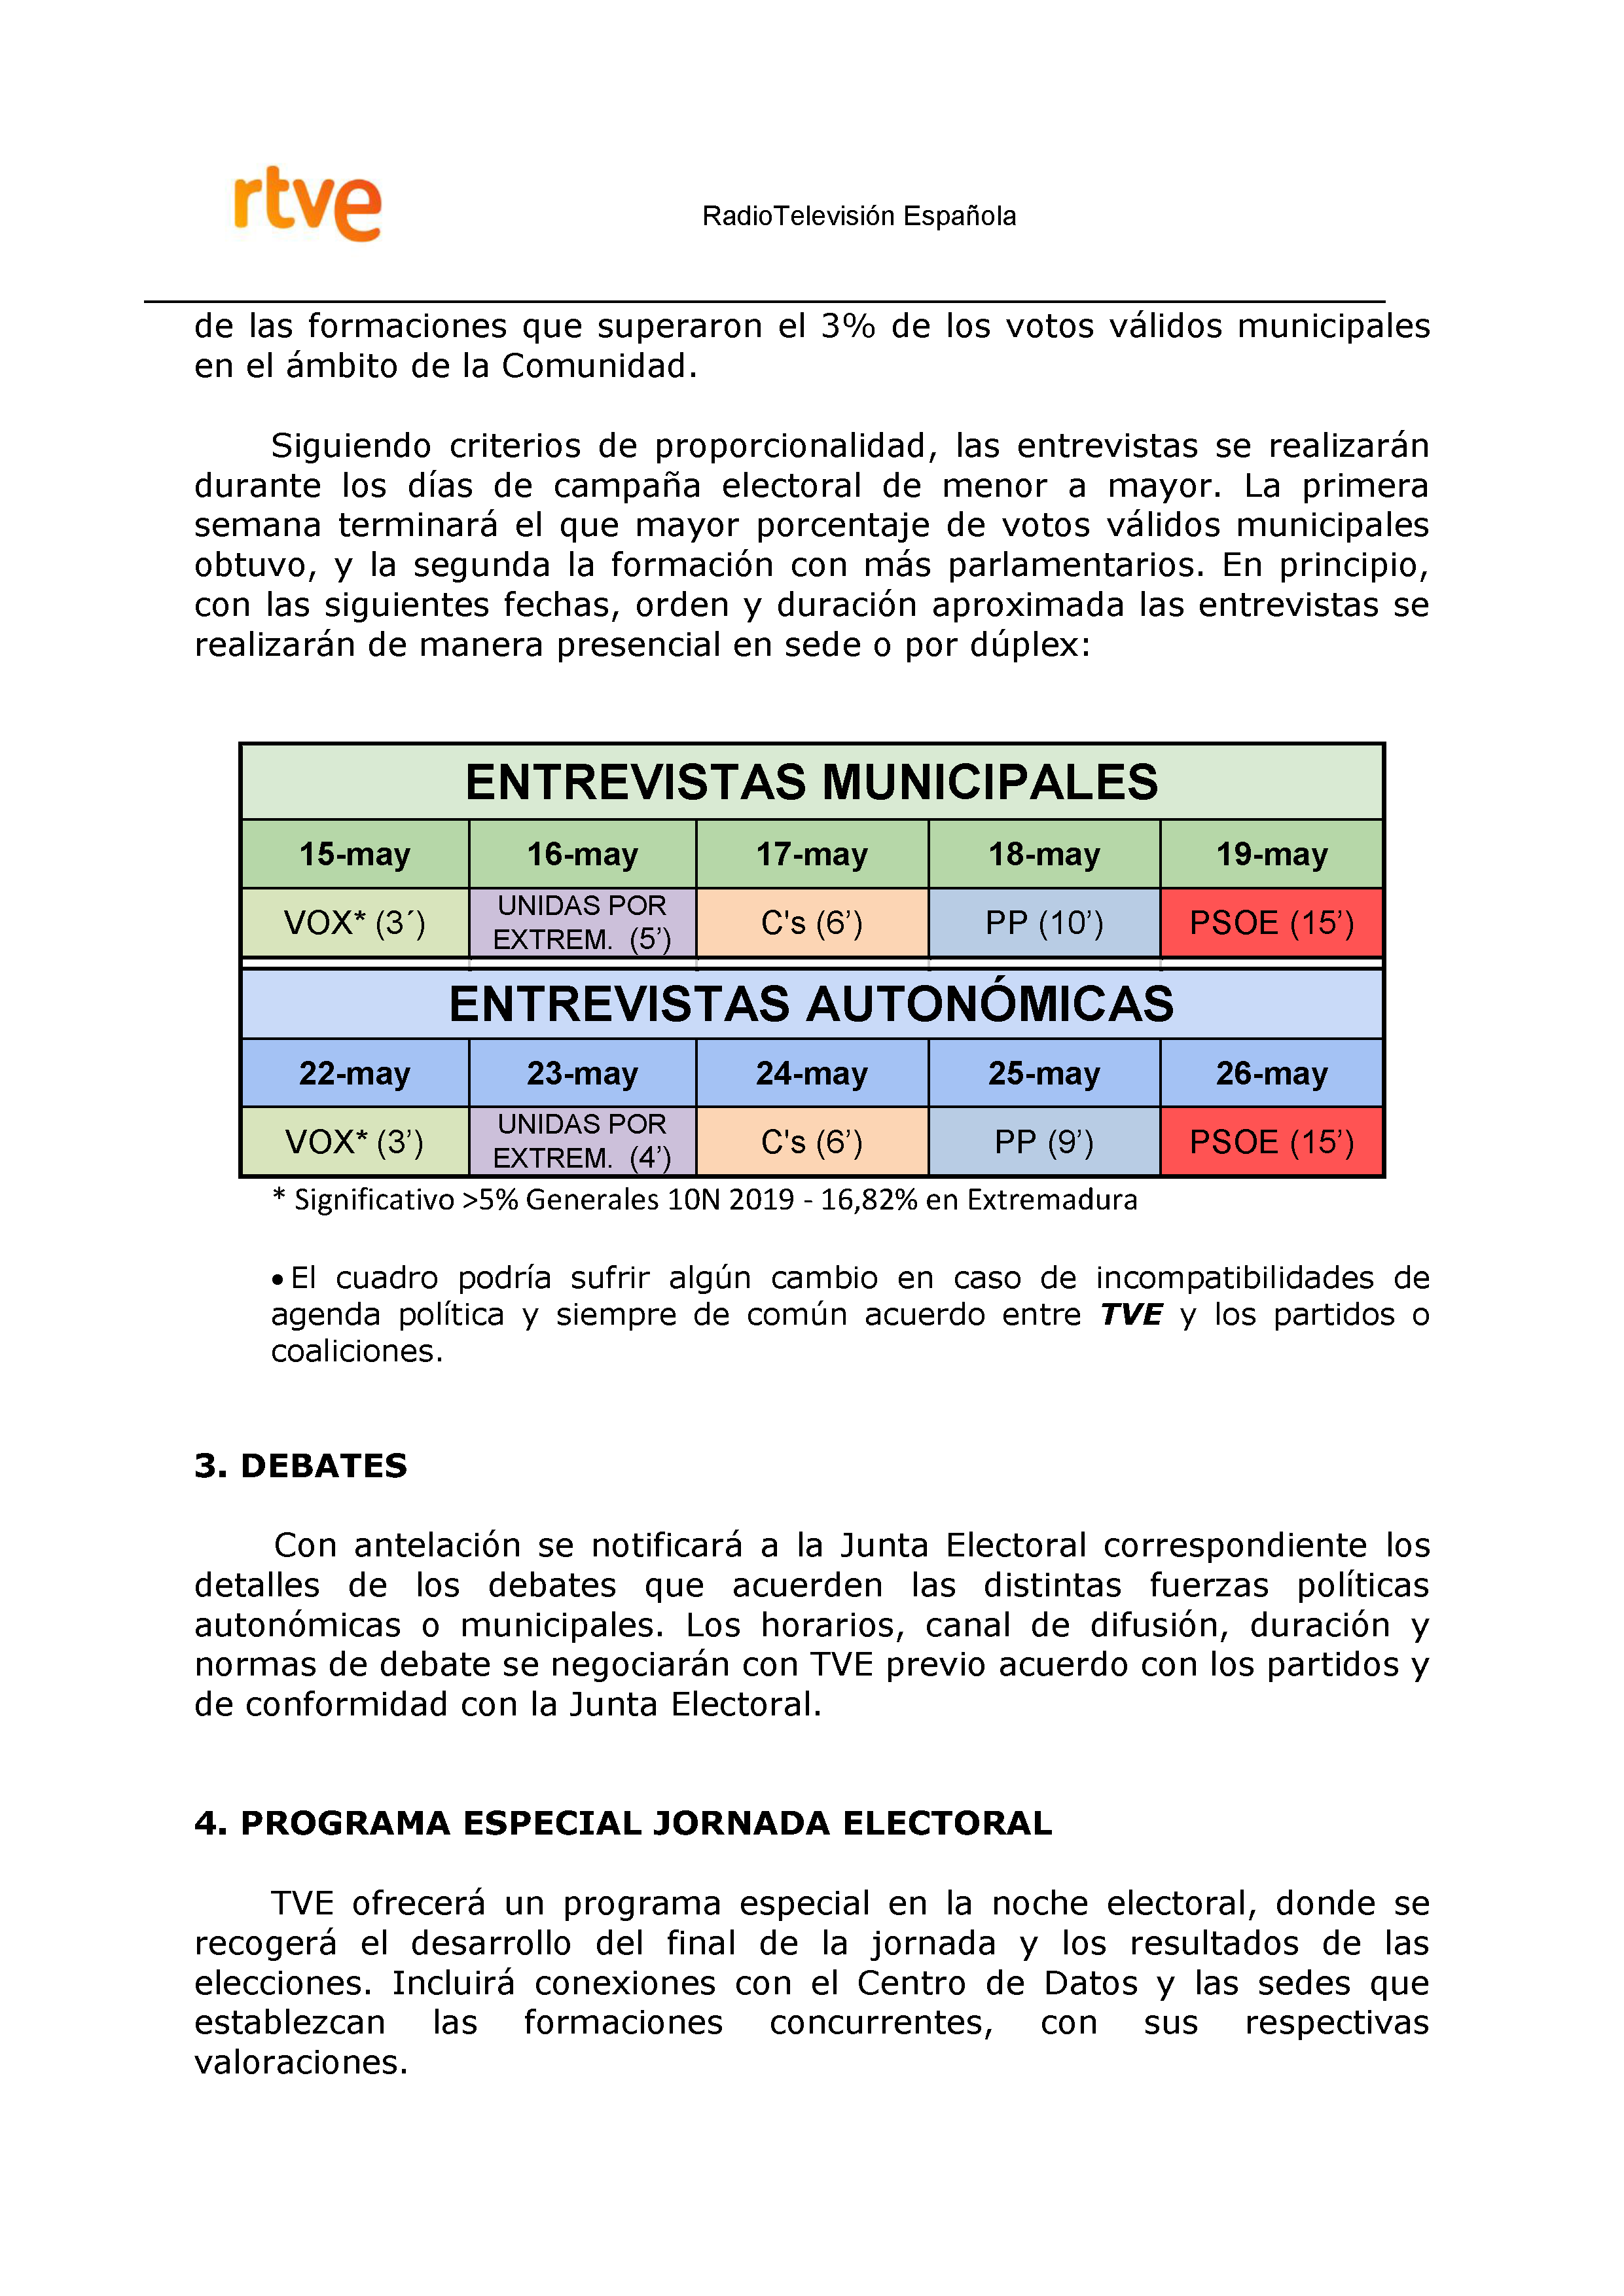 PLAN DE COBERTURA INFORMATIVA RTVE EN EXTREMADURA Pag 7